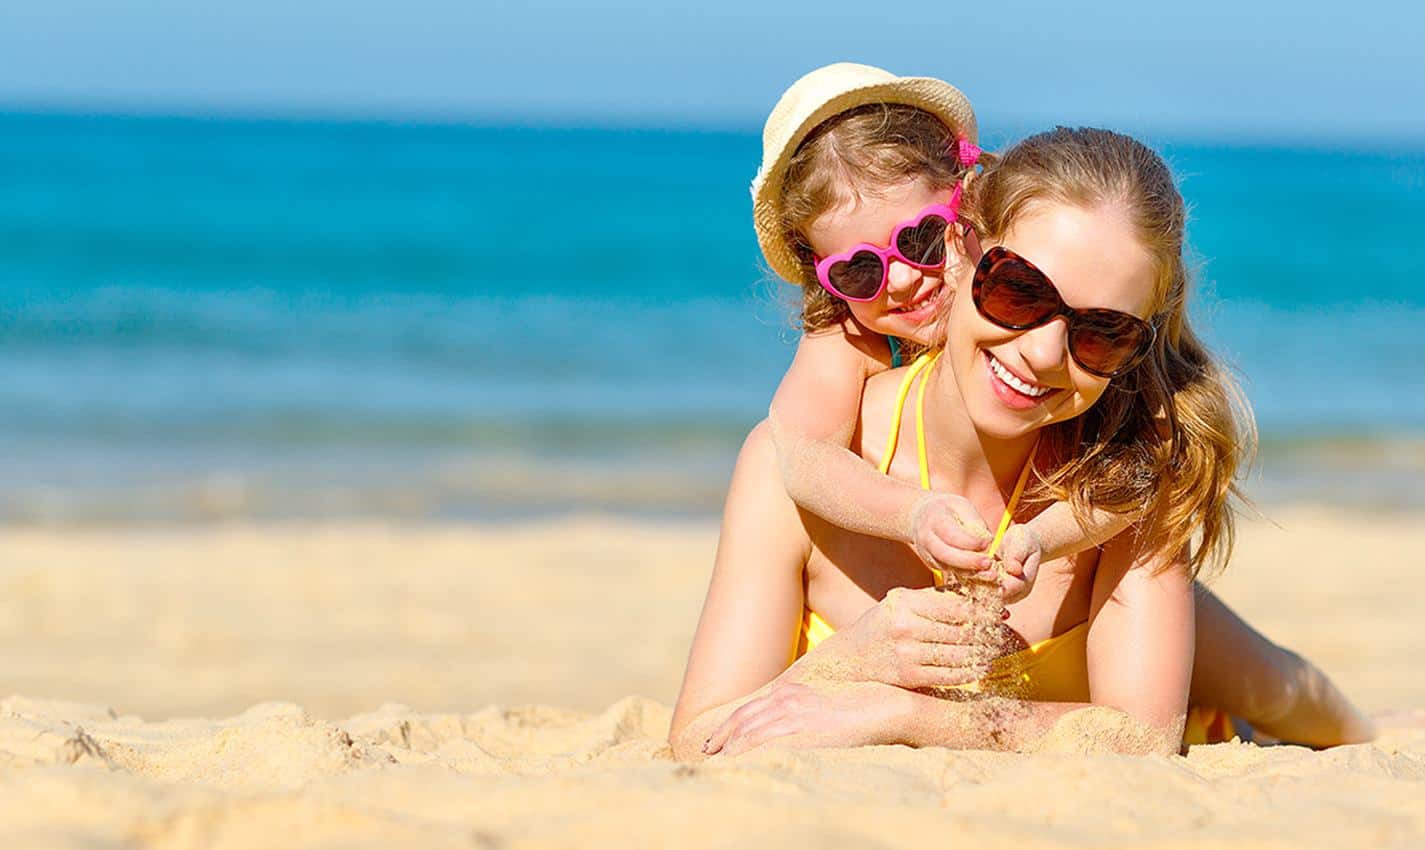 Childhood sunburn increases cancer risk #1